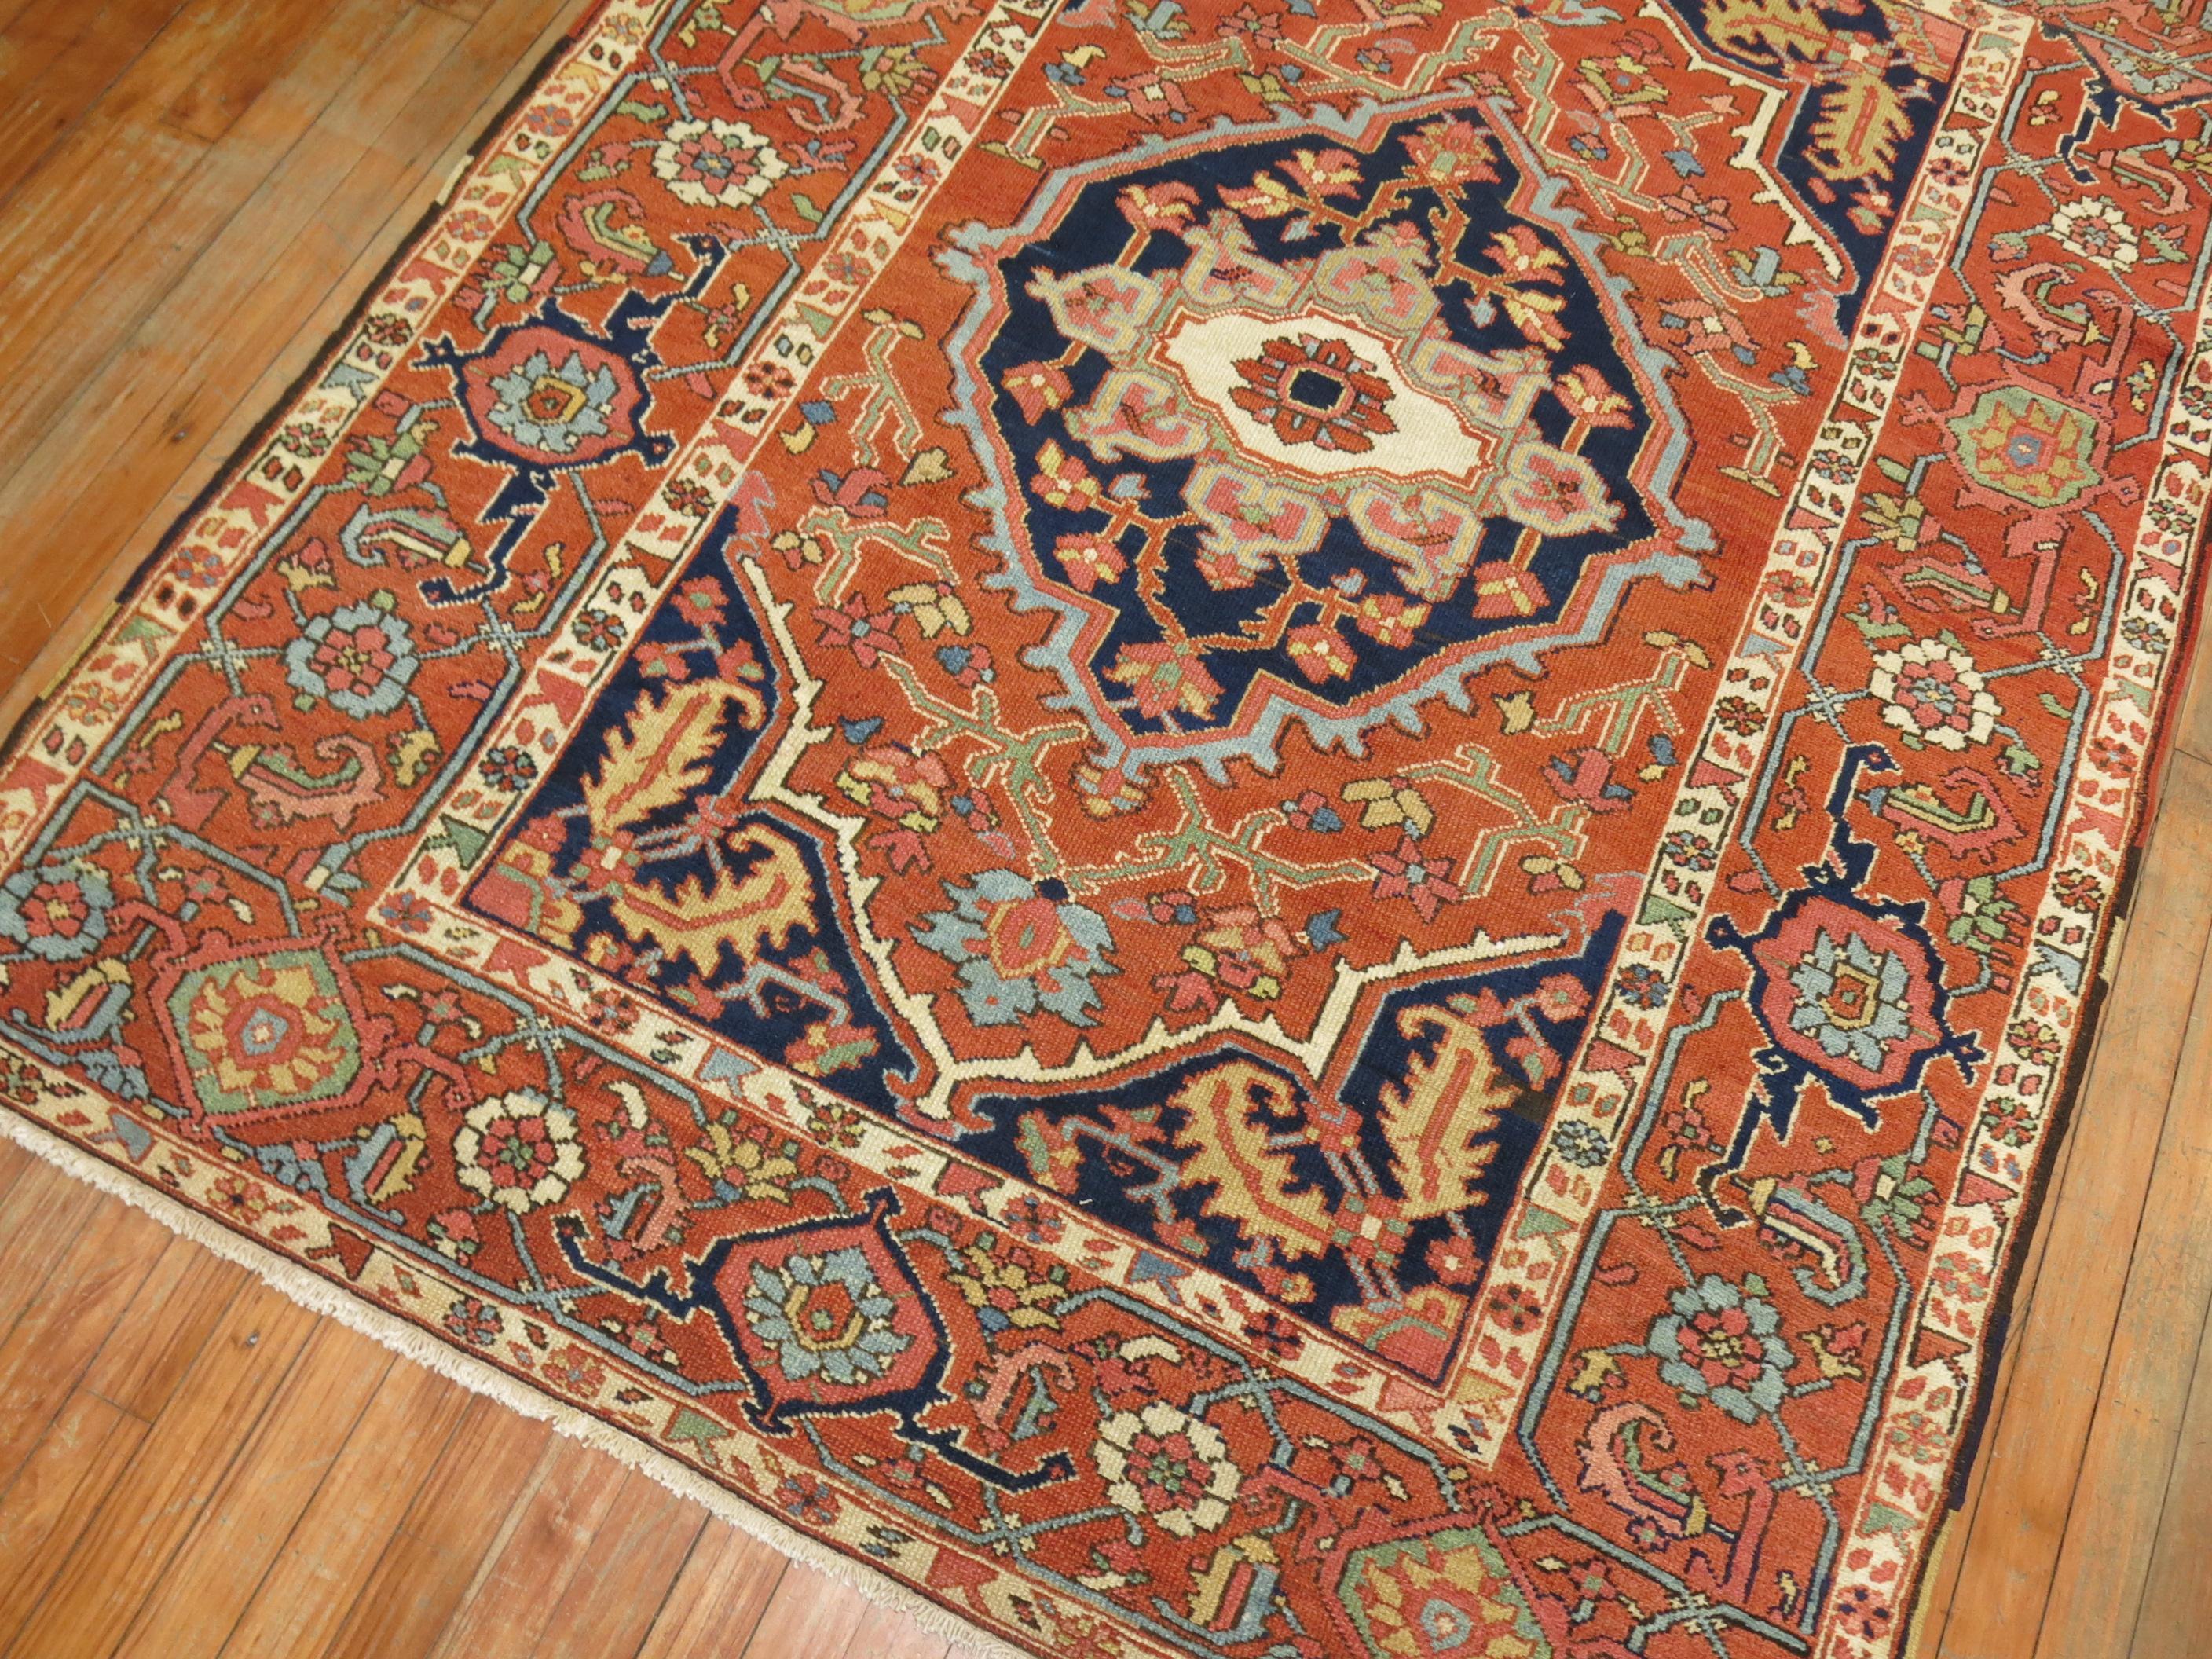 Un extraordinaire et authentique tapis Persan Heriz Serapi du début du 20ème siècle, de calibre Connoisseur, avec un motif classique de médaillon et de bordure.

Mesures : 4'10'' x 6'3''

Le tapis Serapi remonte au début de la production de